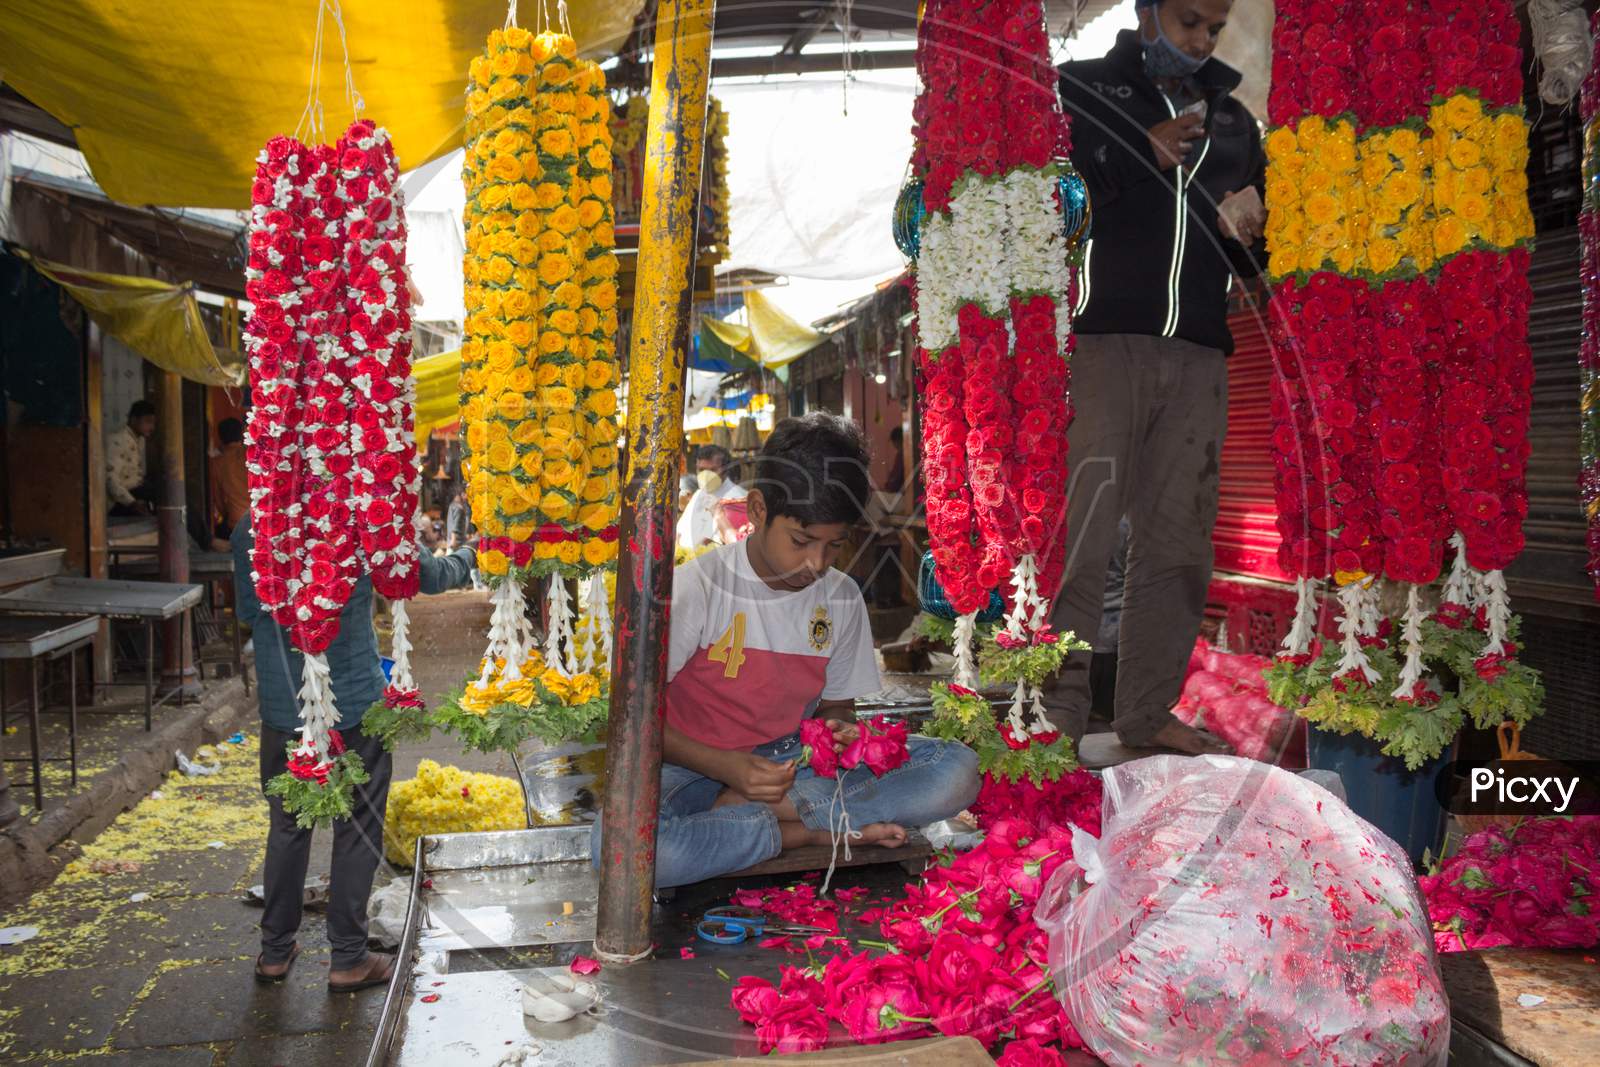 Flower garlands in Mysore Market in Karnataka/India.